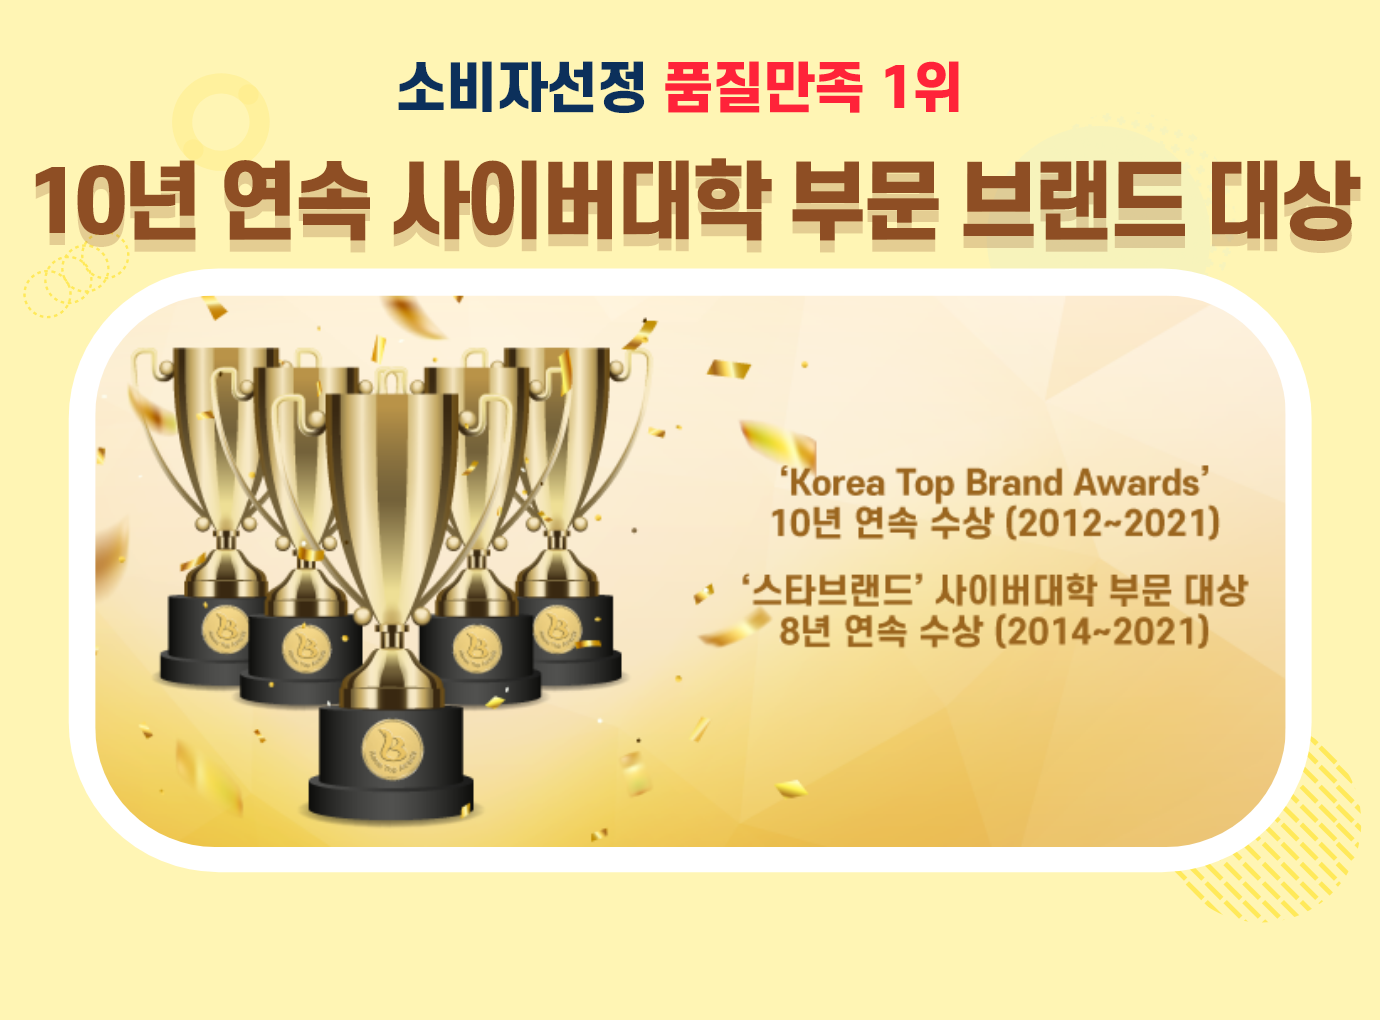 소비자 선정 품질만족 1위, 10년 연속 사이버대학 부문 브랜드 대상, 'Korea Top Brand Awards' 10년 연속 수상(2012년 ~ 2021년), '스타브랜드' 사이버대학 부문 대상 8년 연속 수상(2014년 ~ 2021년)